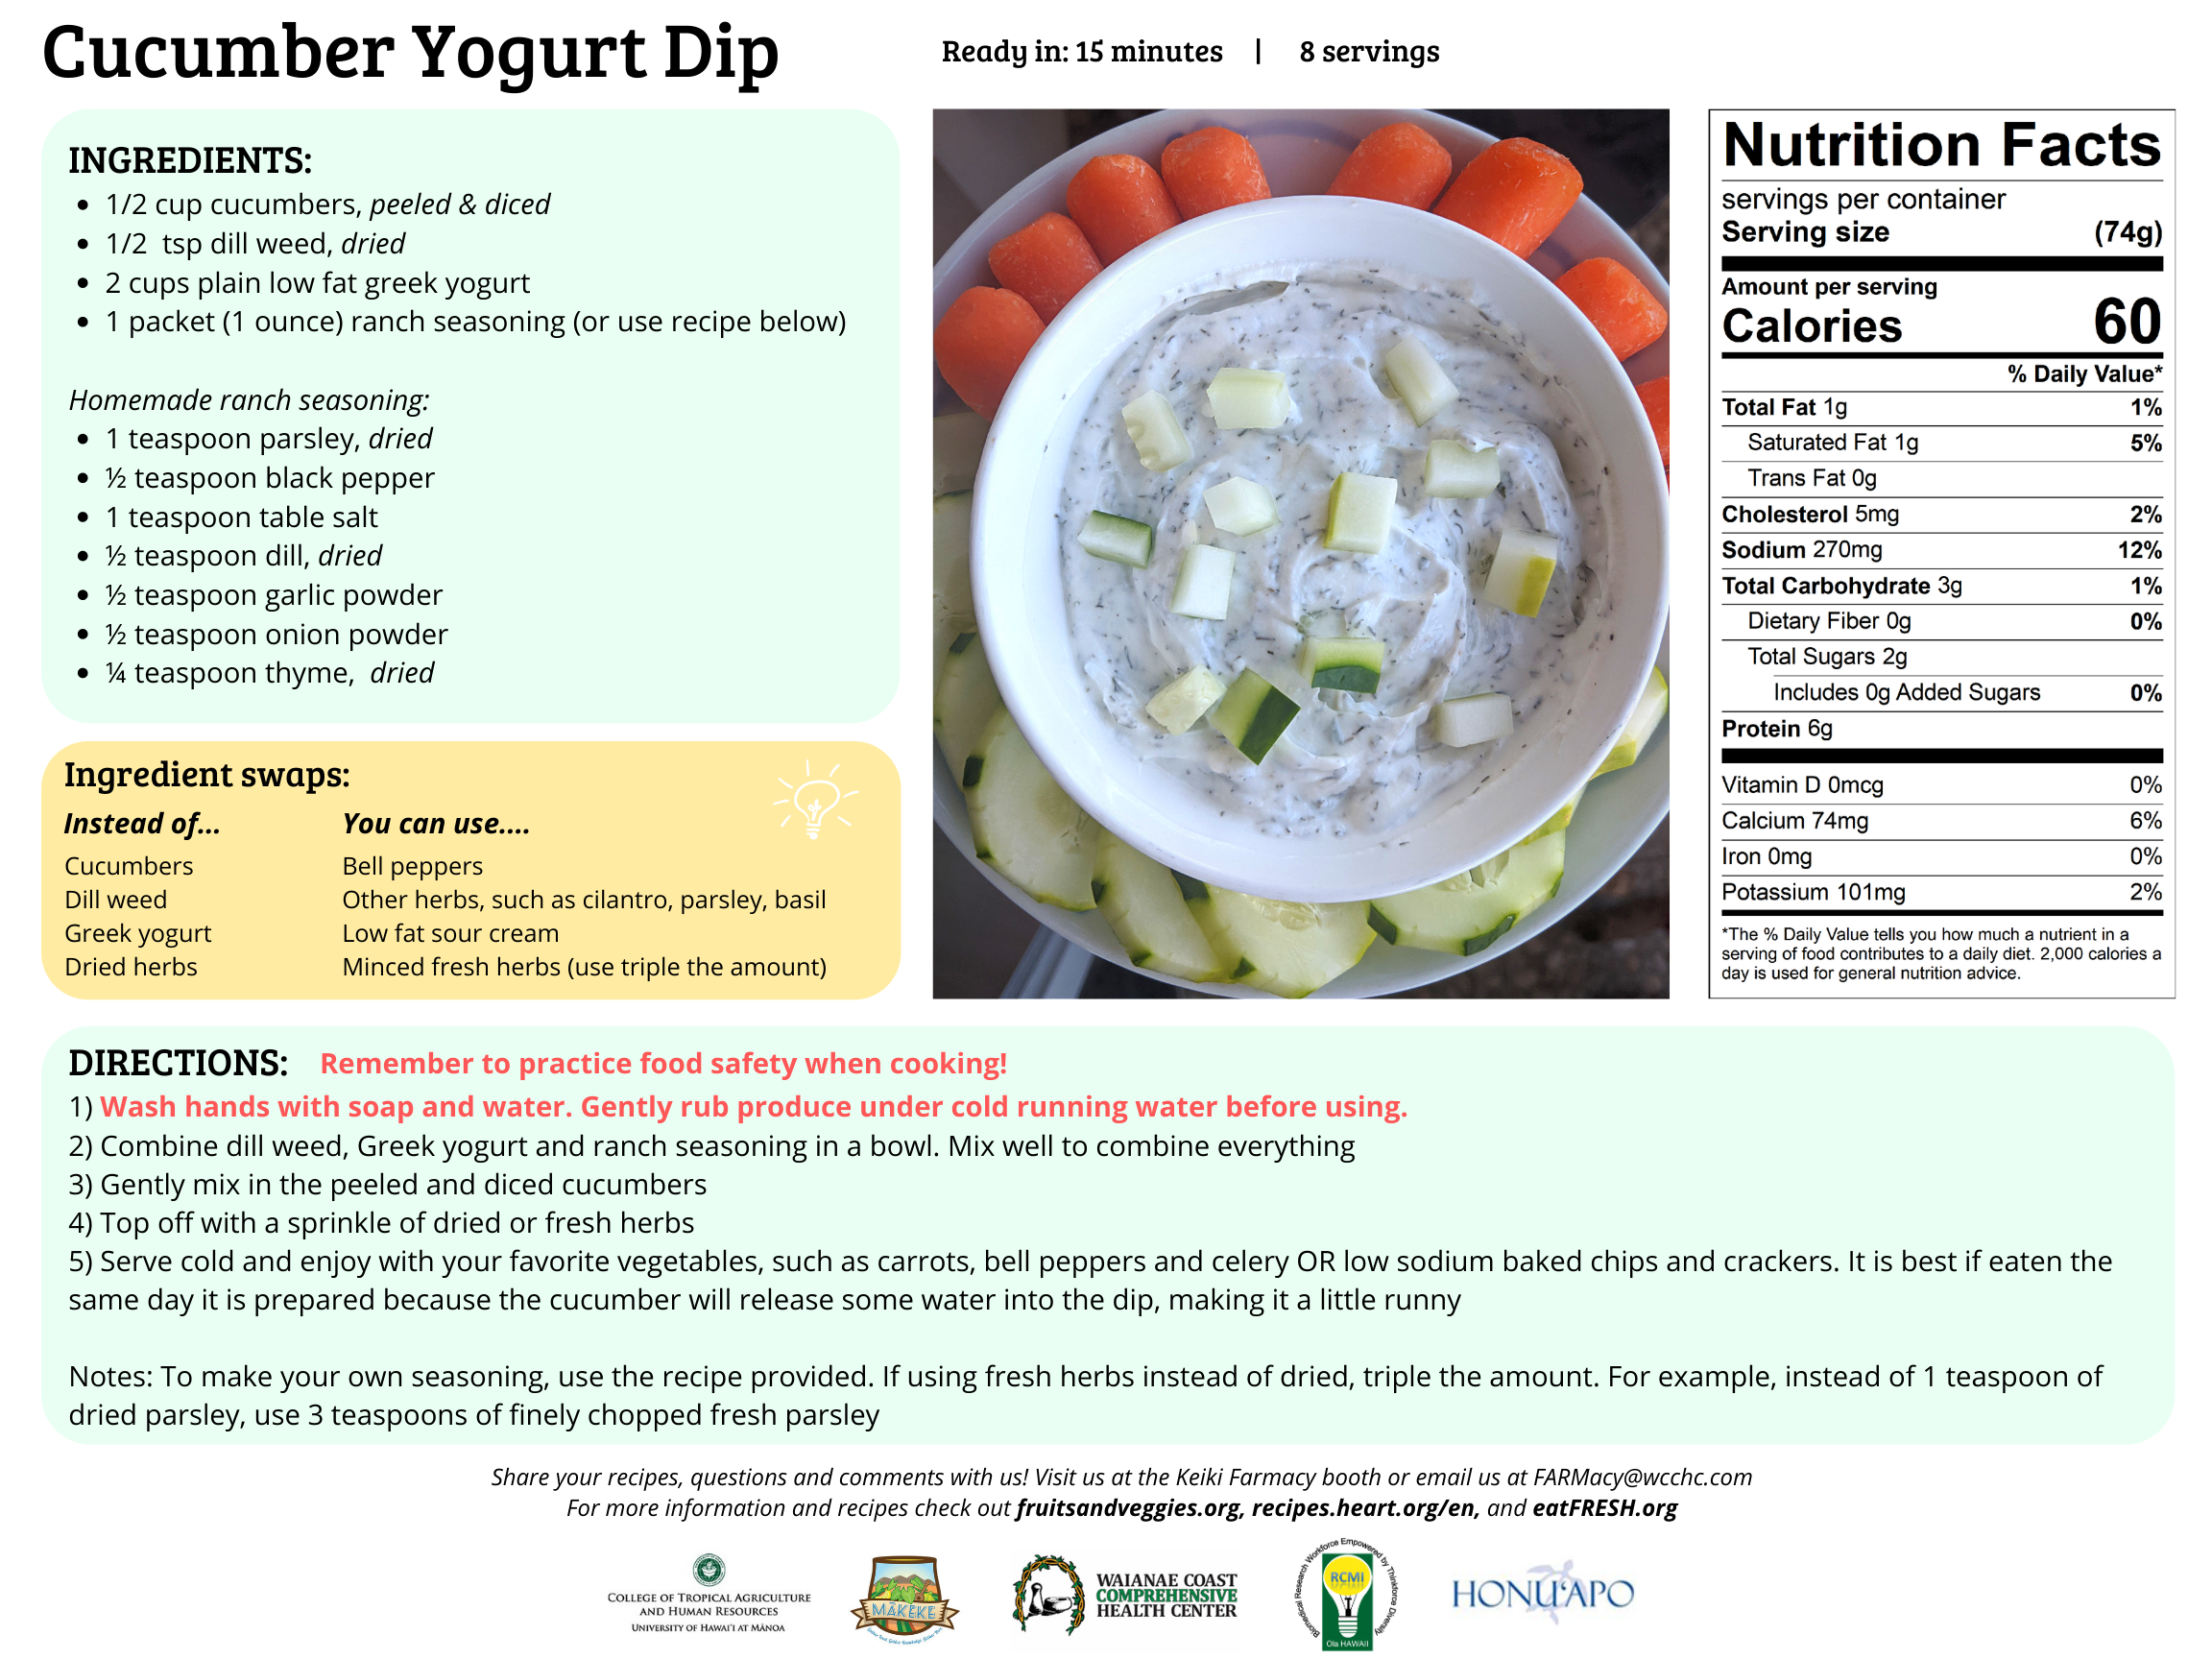 Cucumber Yogurt Dip Recipe Card